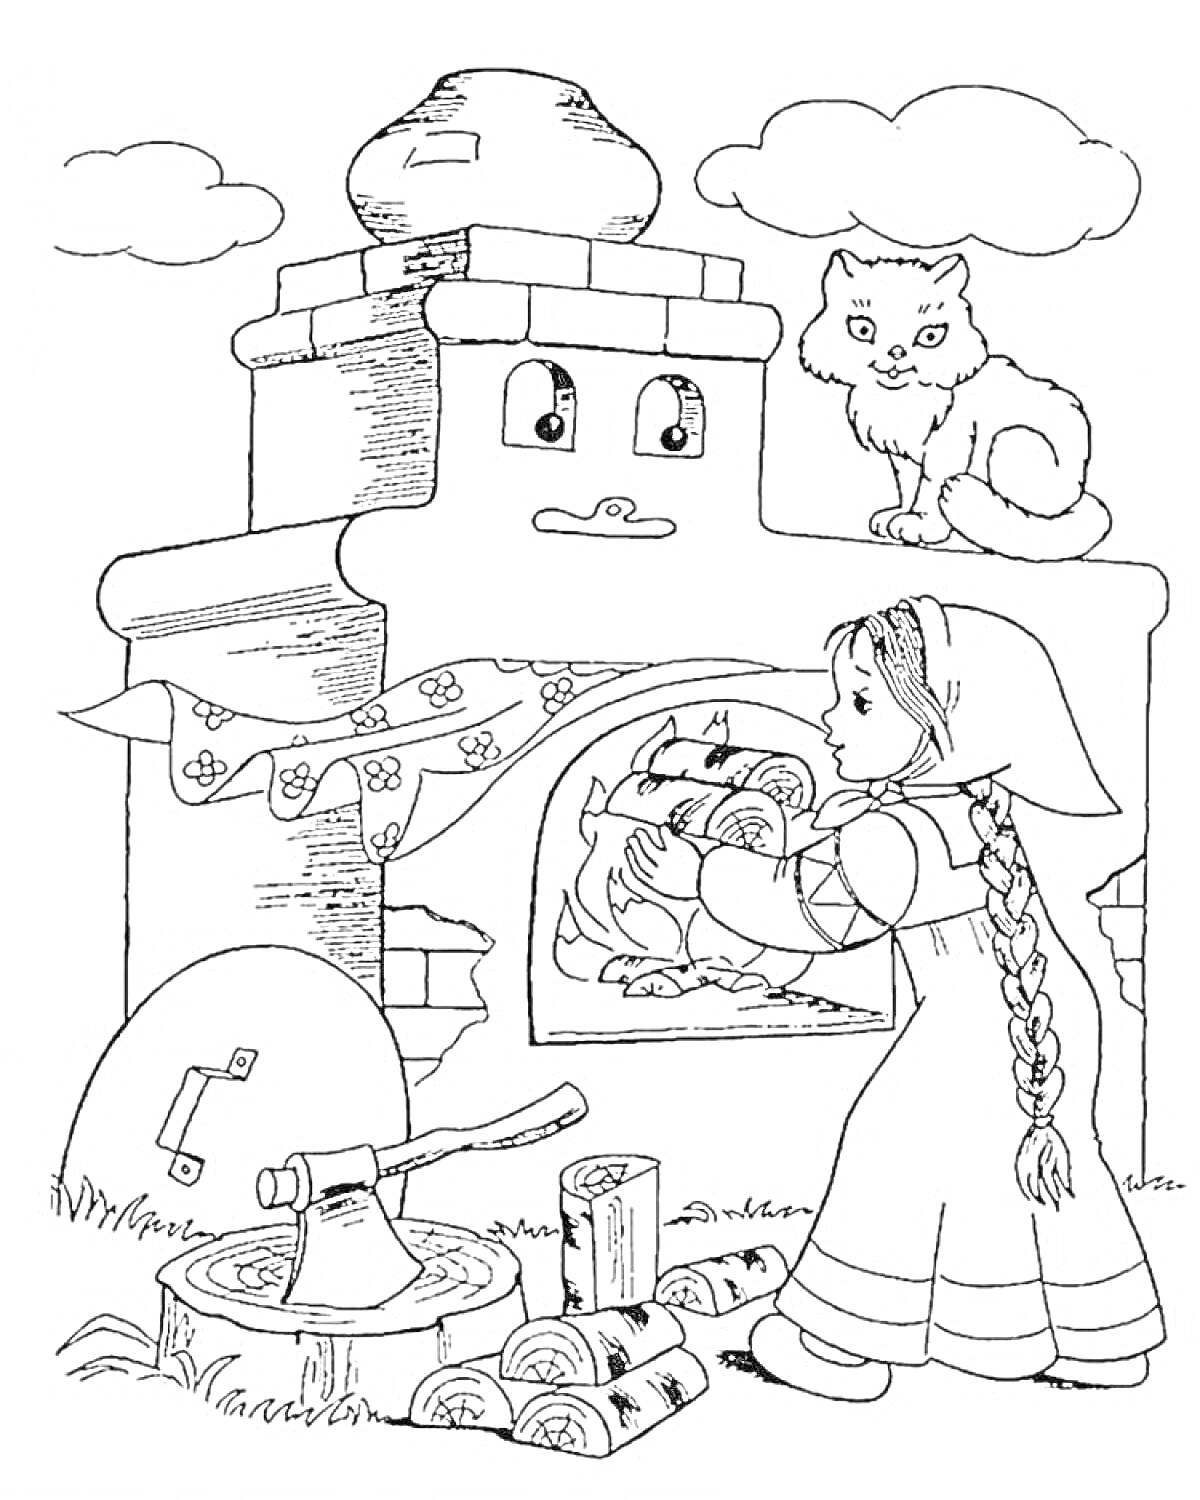 Раскраска Девочка с косой, кладет дрова в печь, на печи сидит кот, рядом лежит топор и дрова